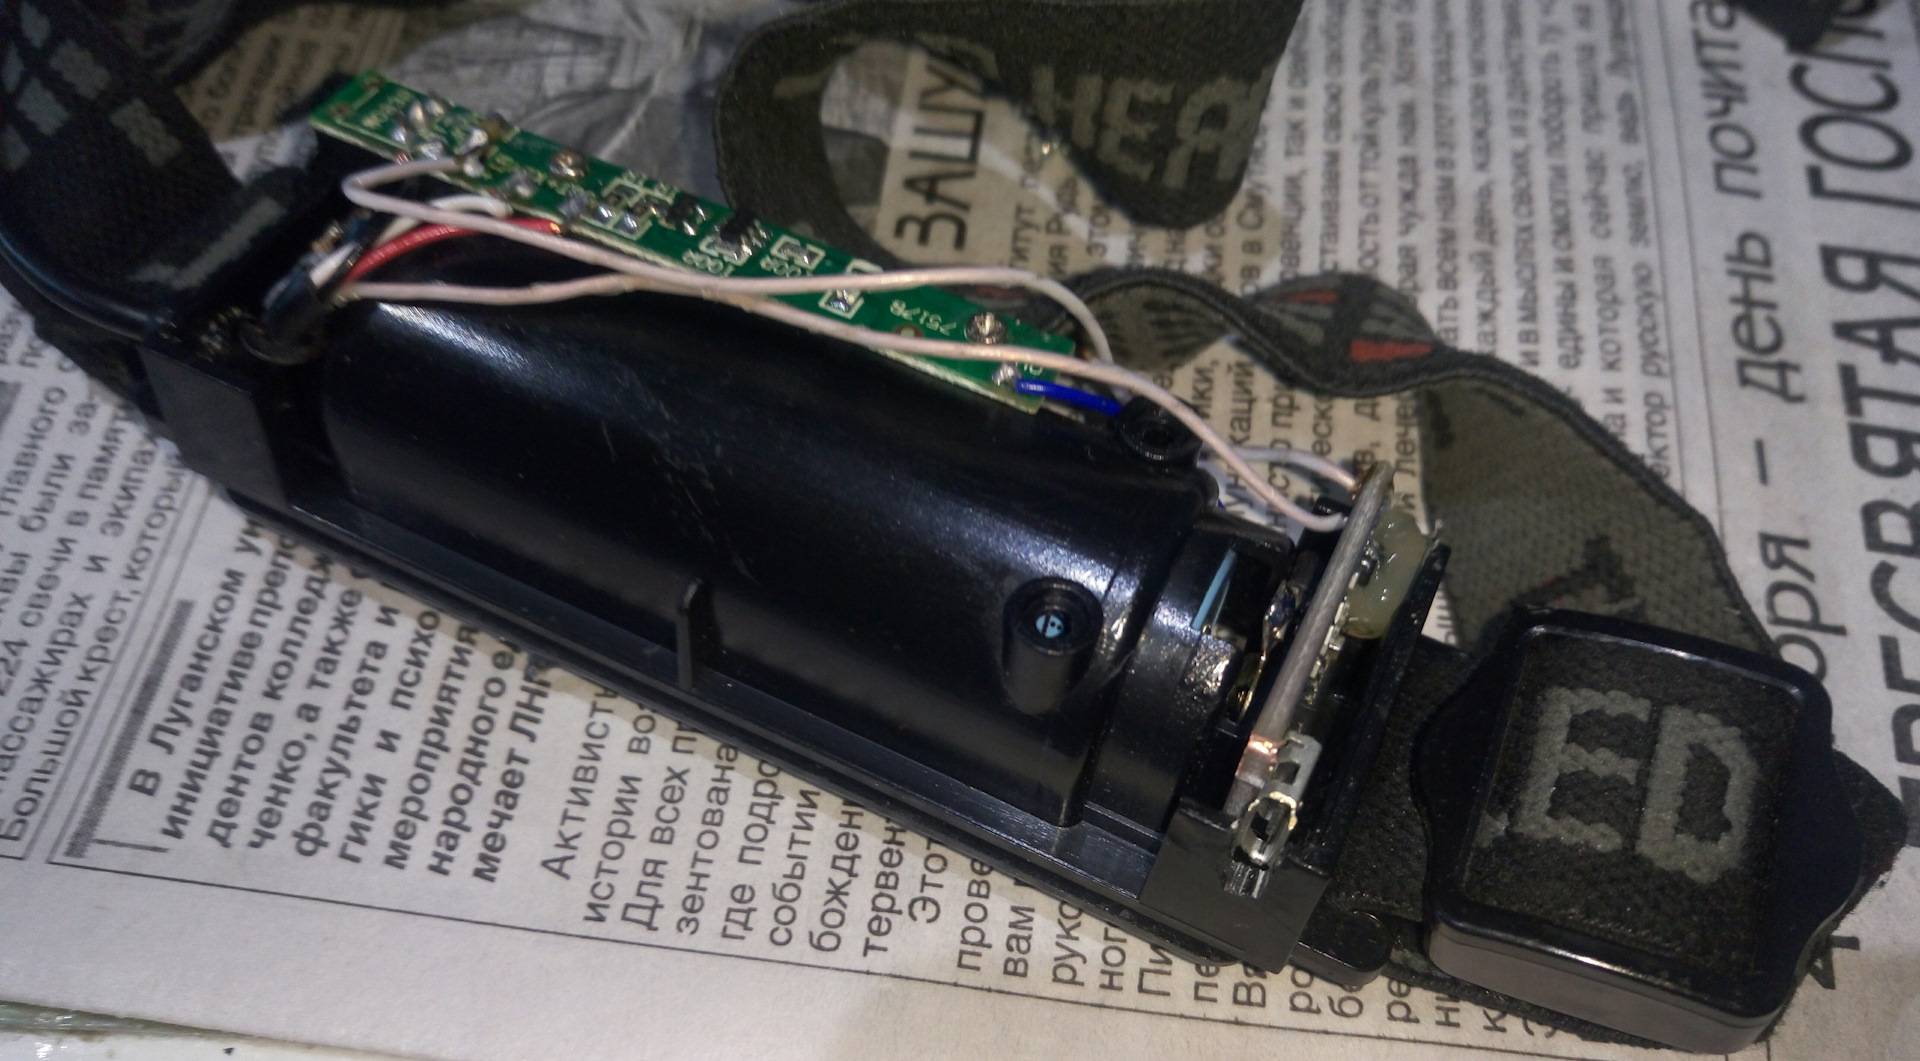 Переделка китайского налобного фонаря в аккумуляторный с зарядкой юсби